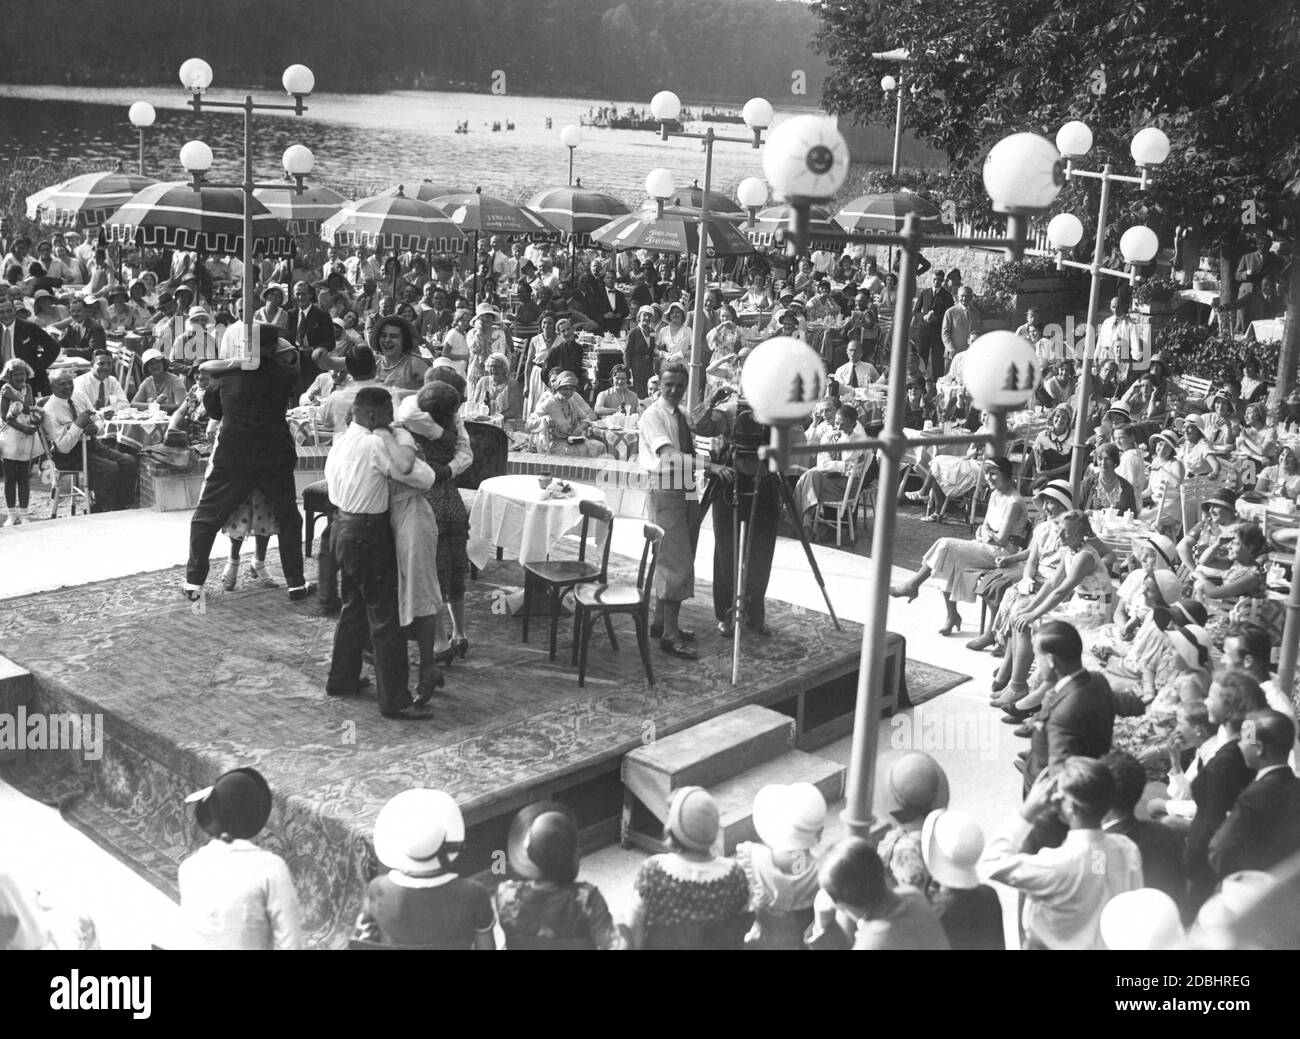 "An einem schönen Sommertag 1931 fand am Krumme Lanke See in Berlin-Zehlendorf ein Filmfestival statt. Das Publikum spielt und ihre Emotionen und Reaktionen werden von einer Tonfilmkamera aufgenommen, die auf der Bühne steht. Auf zwei Sonnenschirmen wird Milch mit den Slogans 'Milch macht stark' und 'frisch durch frische Milch' beworben. Auf der Bühne steht eine Kamera, die auf die Kamera des Fotografen zeigt." Stockfoto